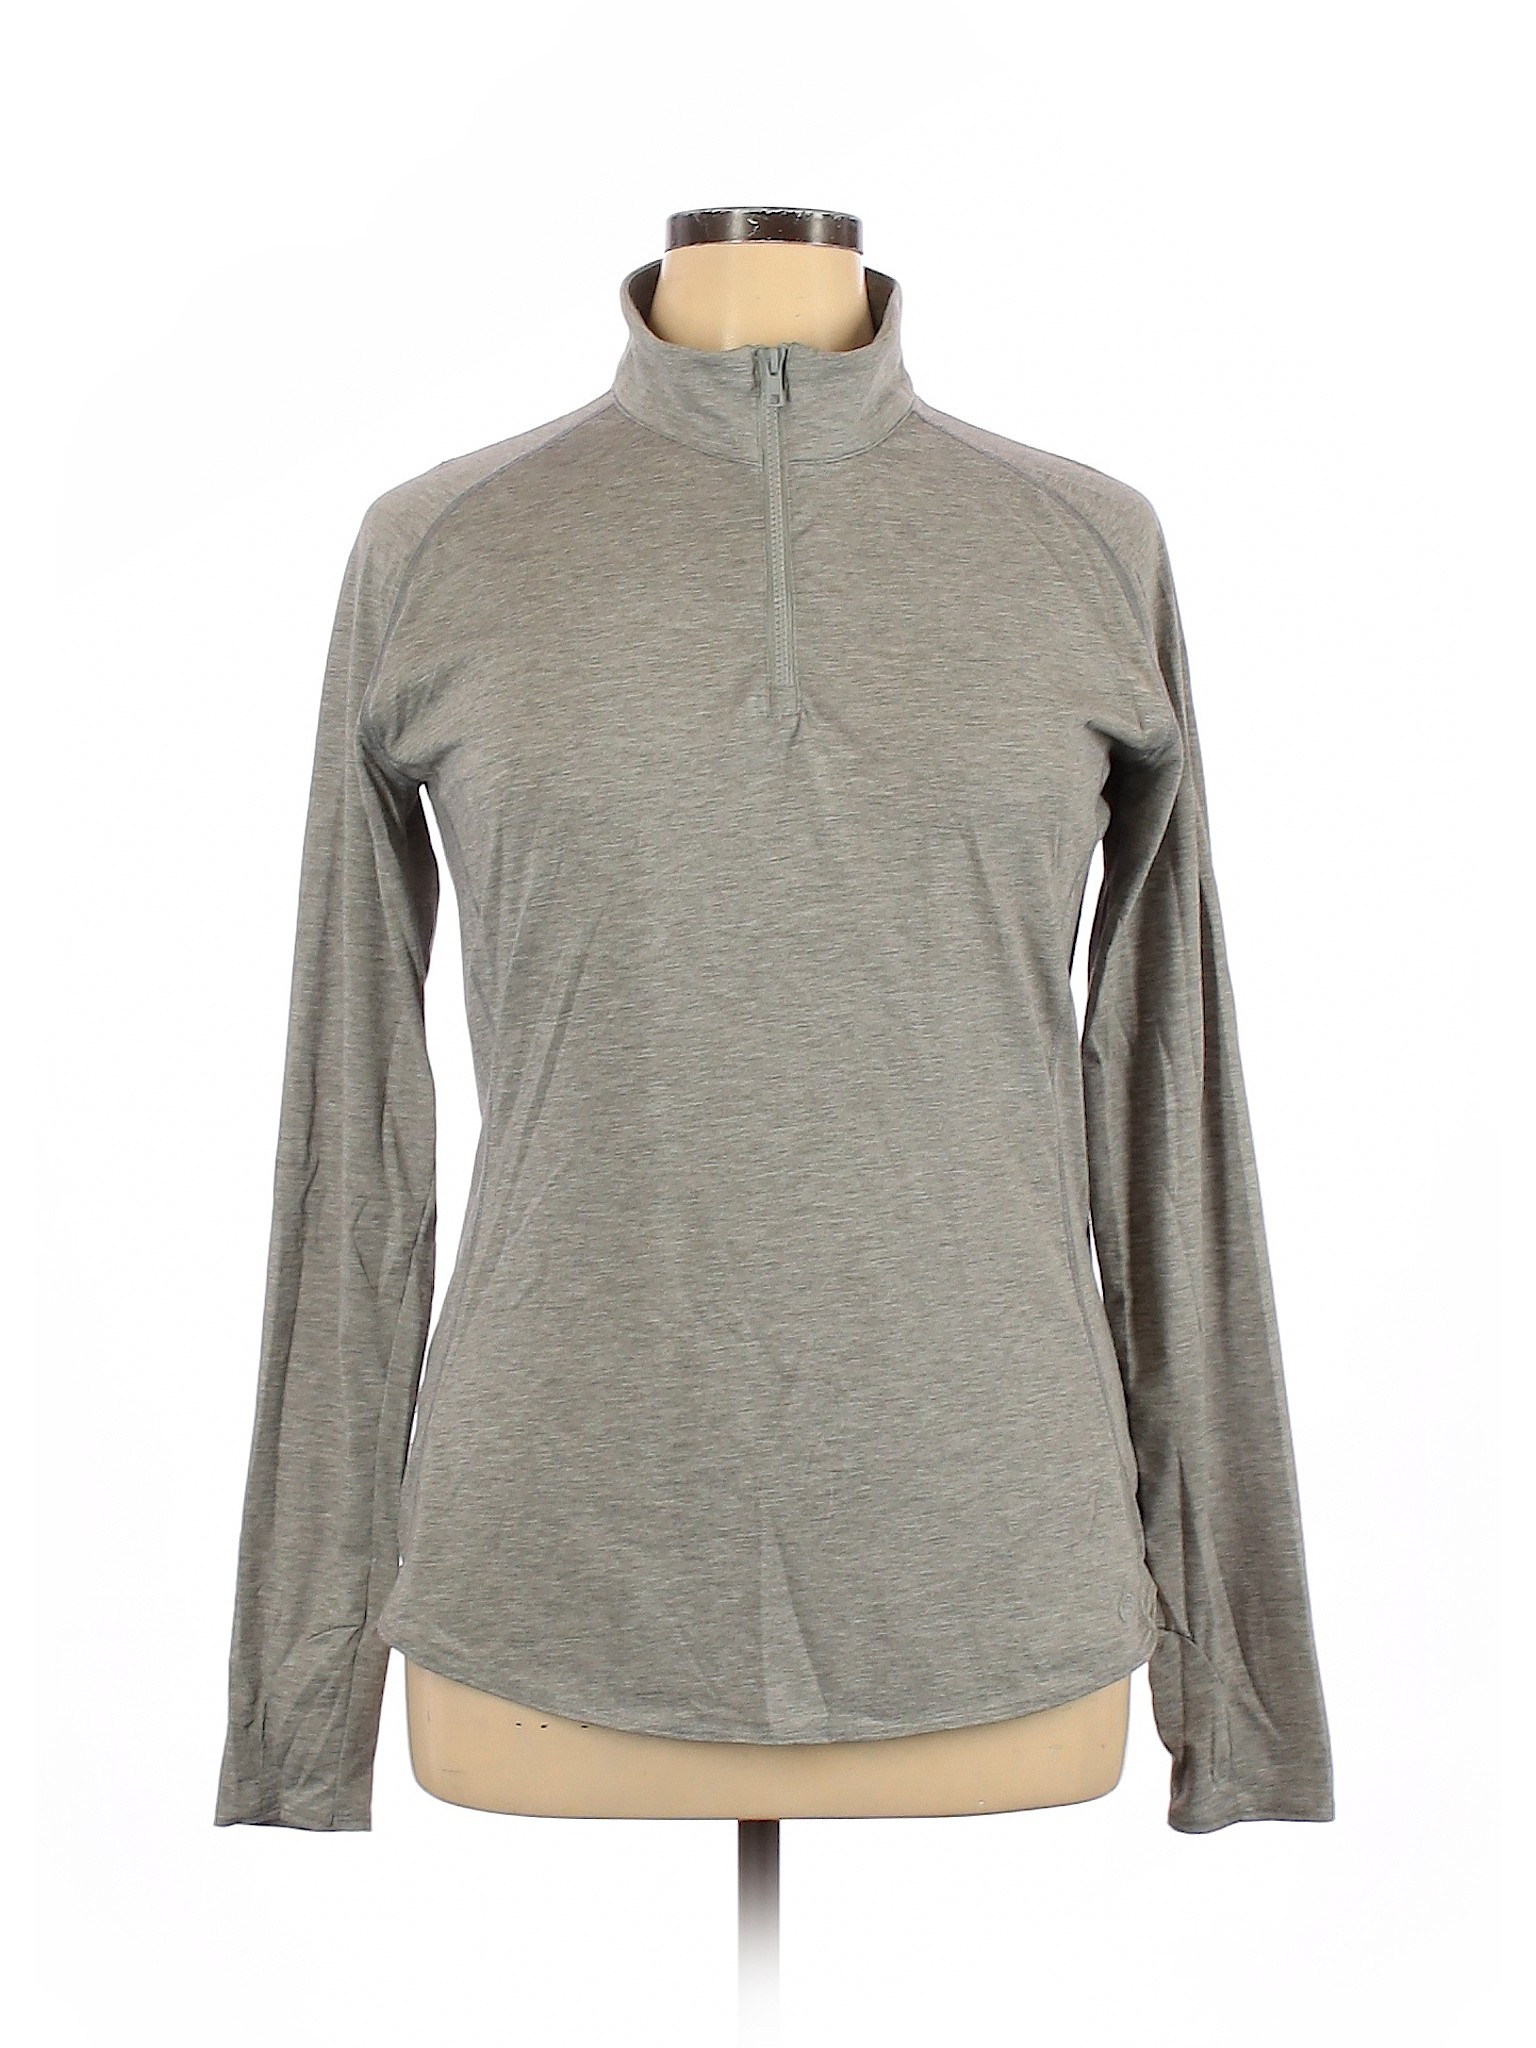 Magellan Sportswear Women Gray Pullover Sweater XL | eBay